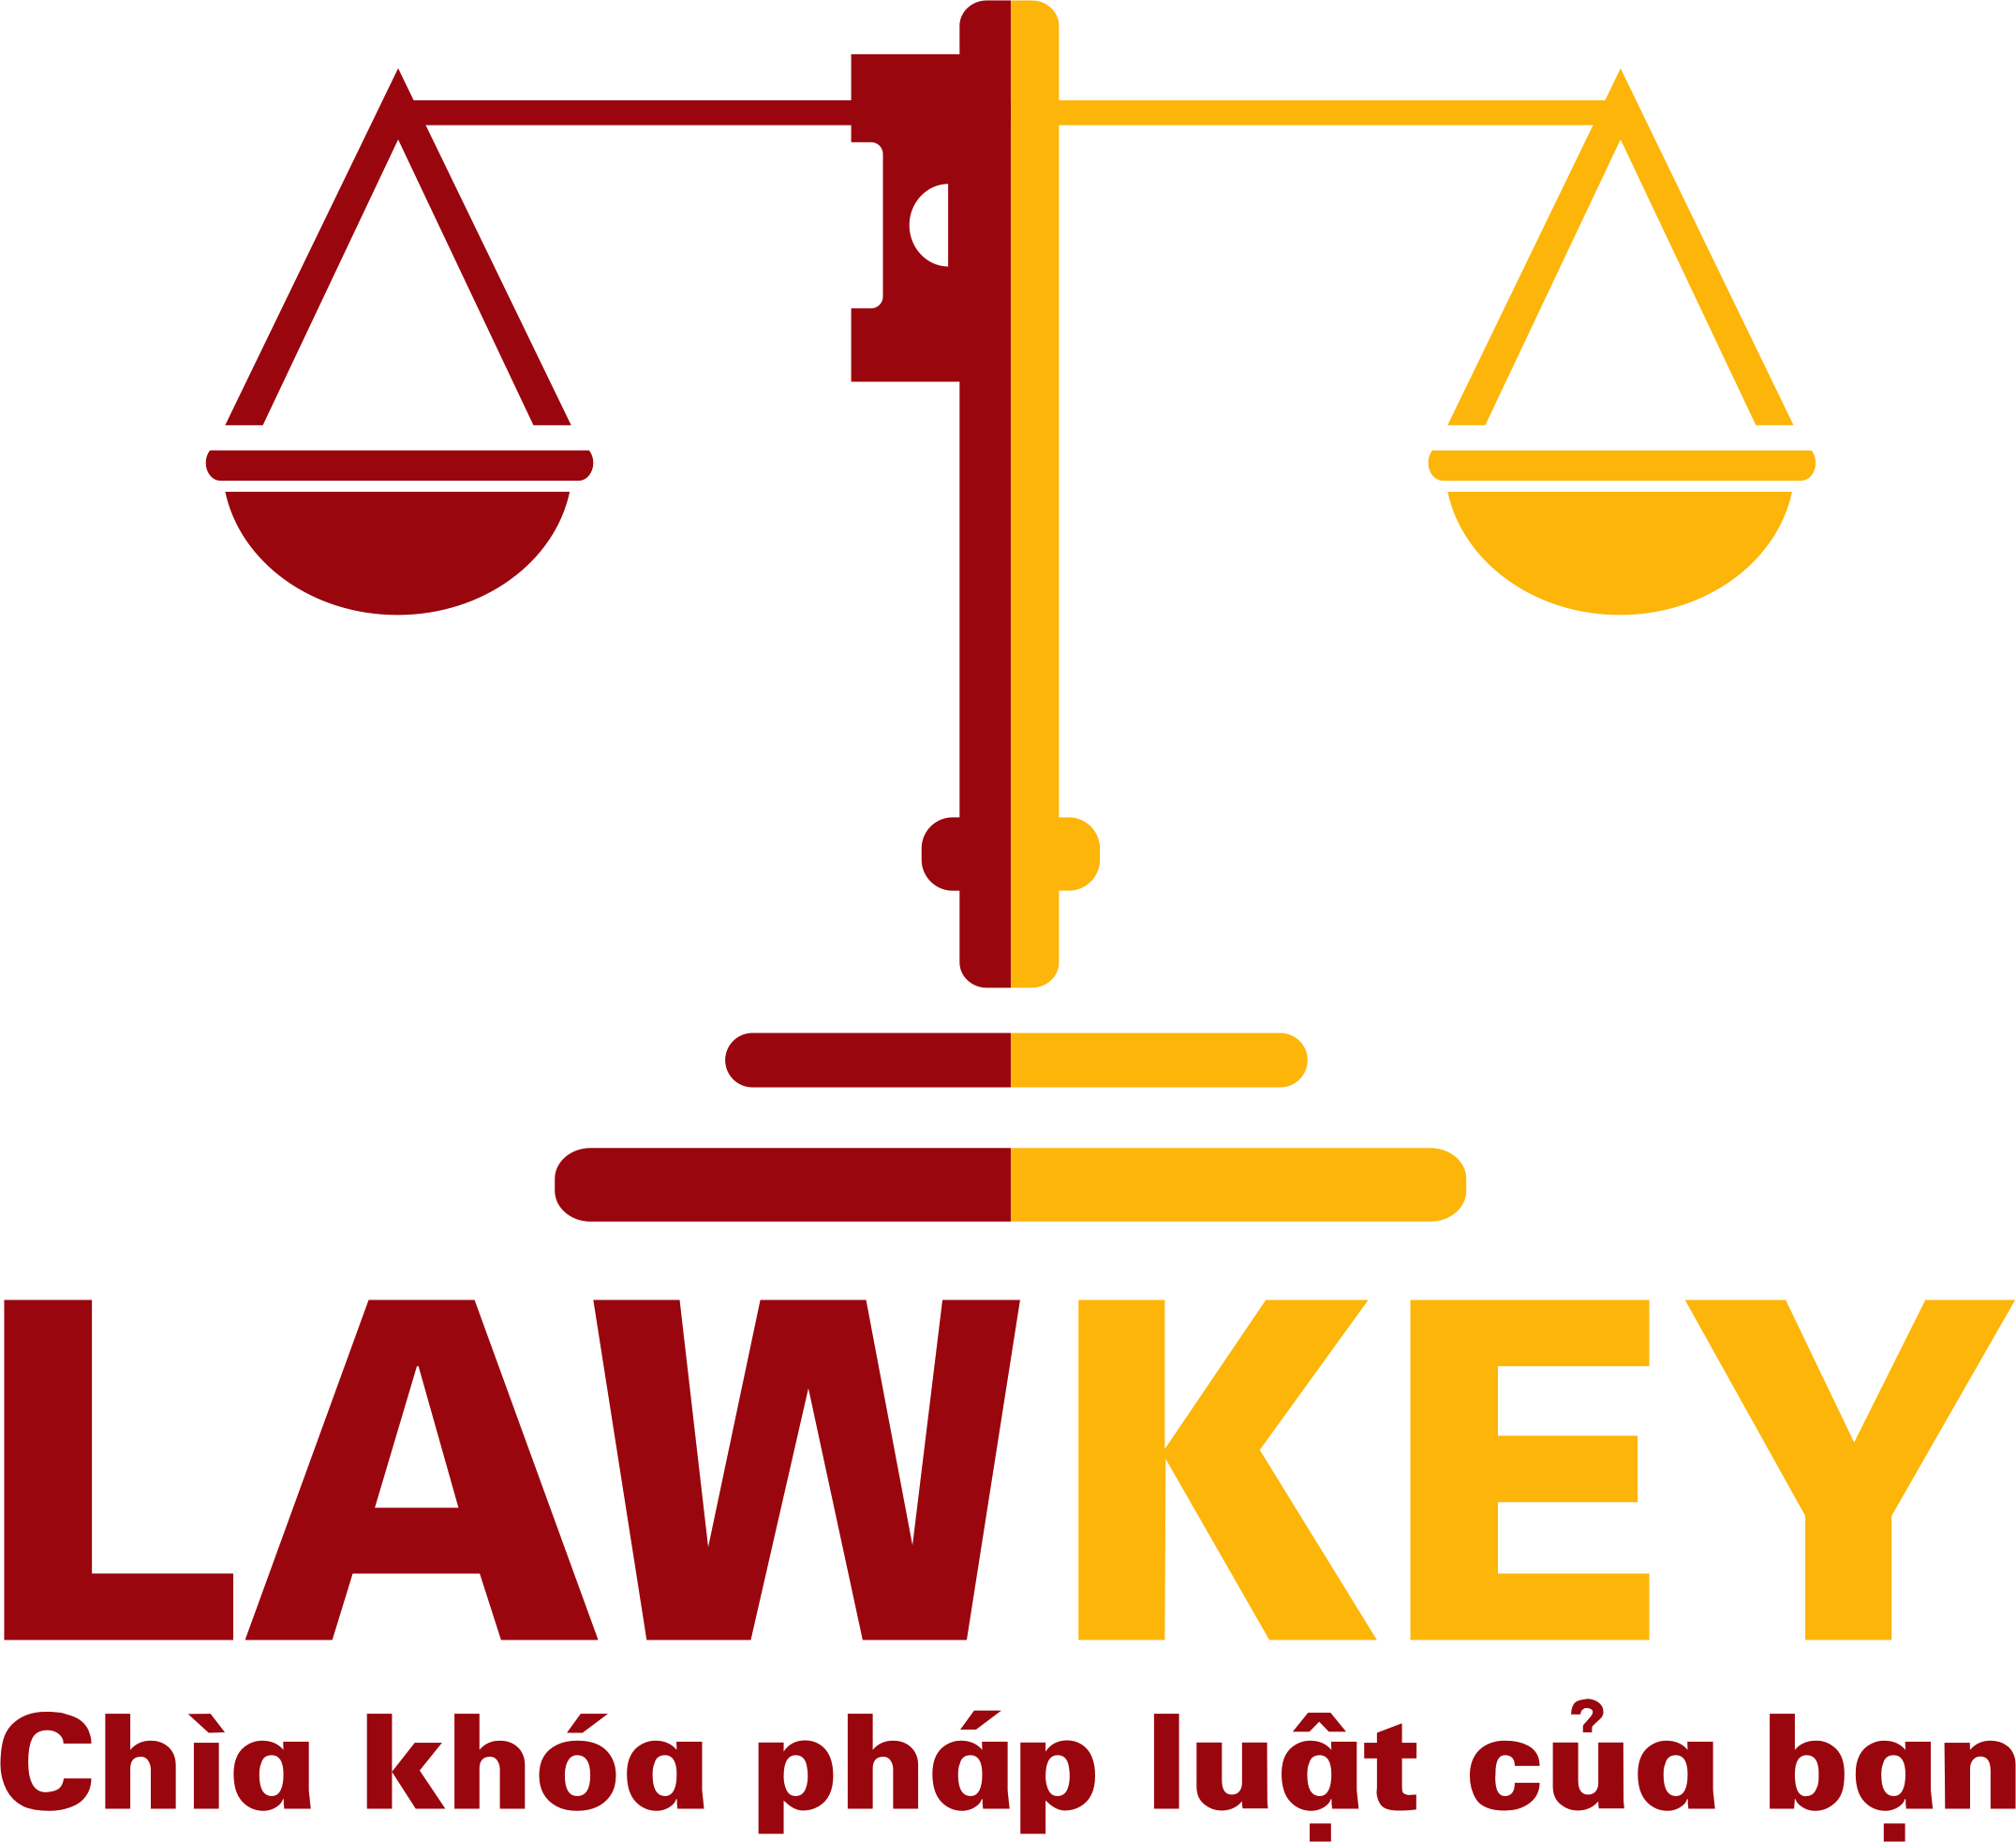 Trang pháp luật kinh tế – Luật LawKey